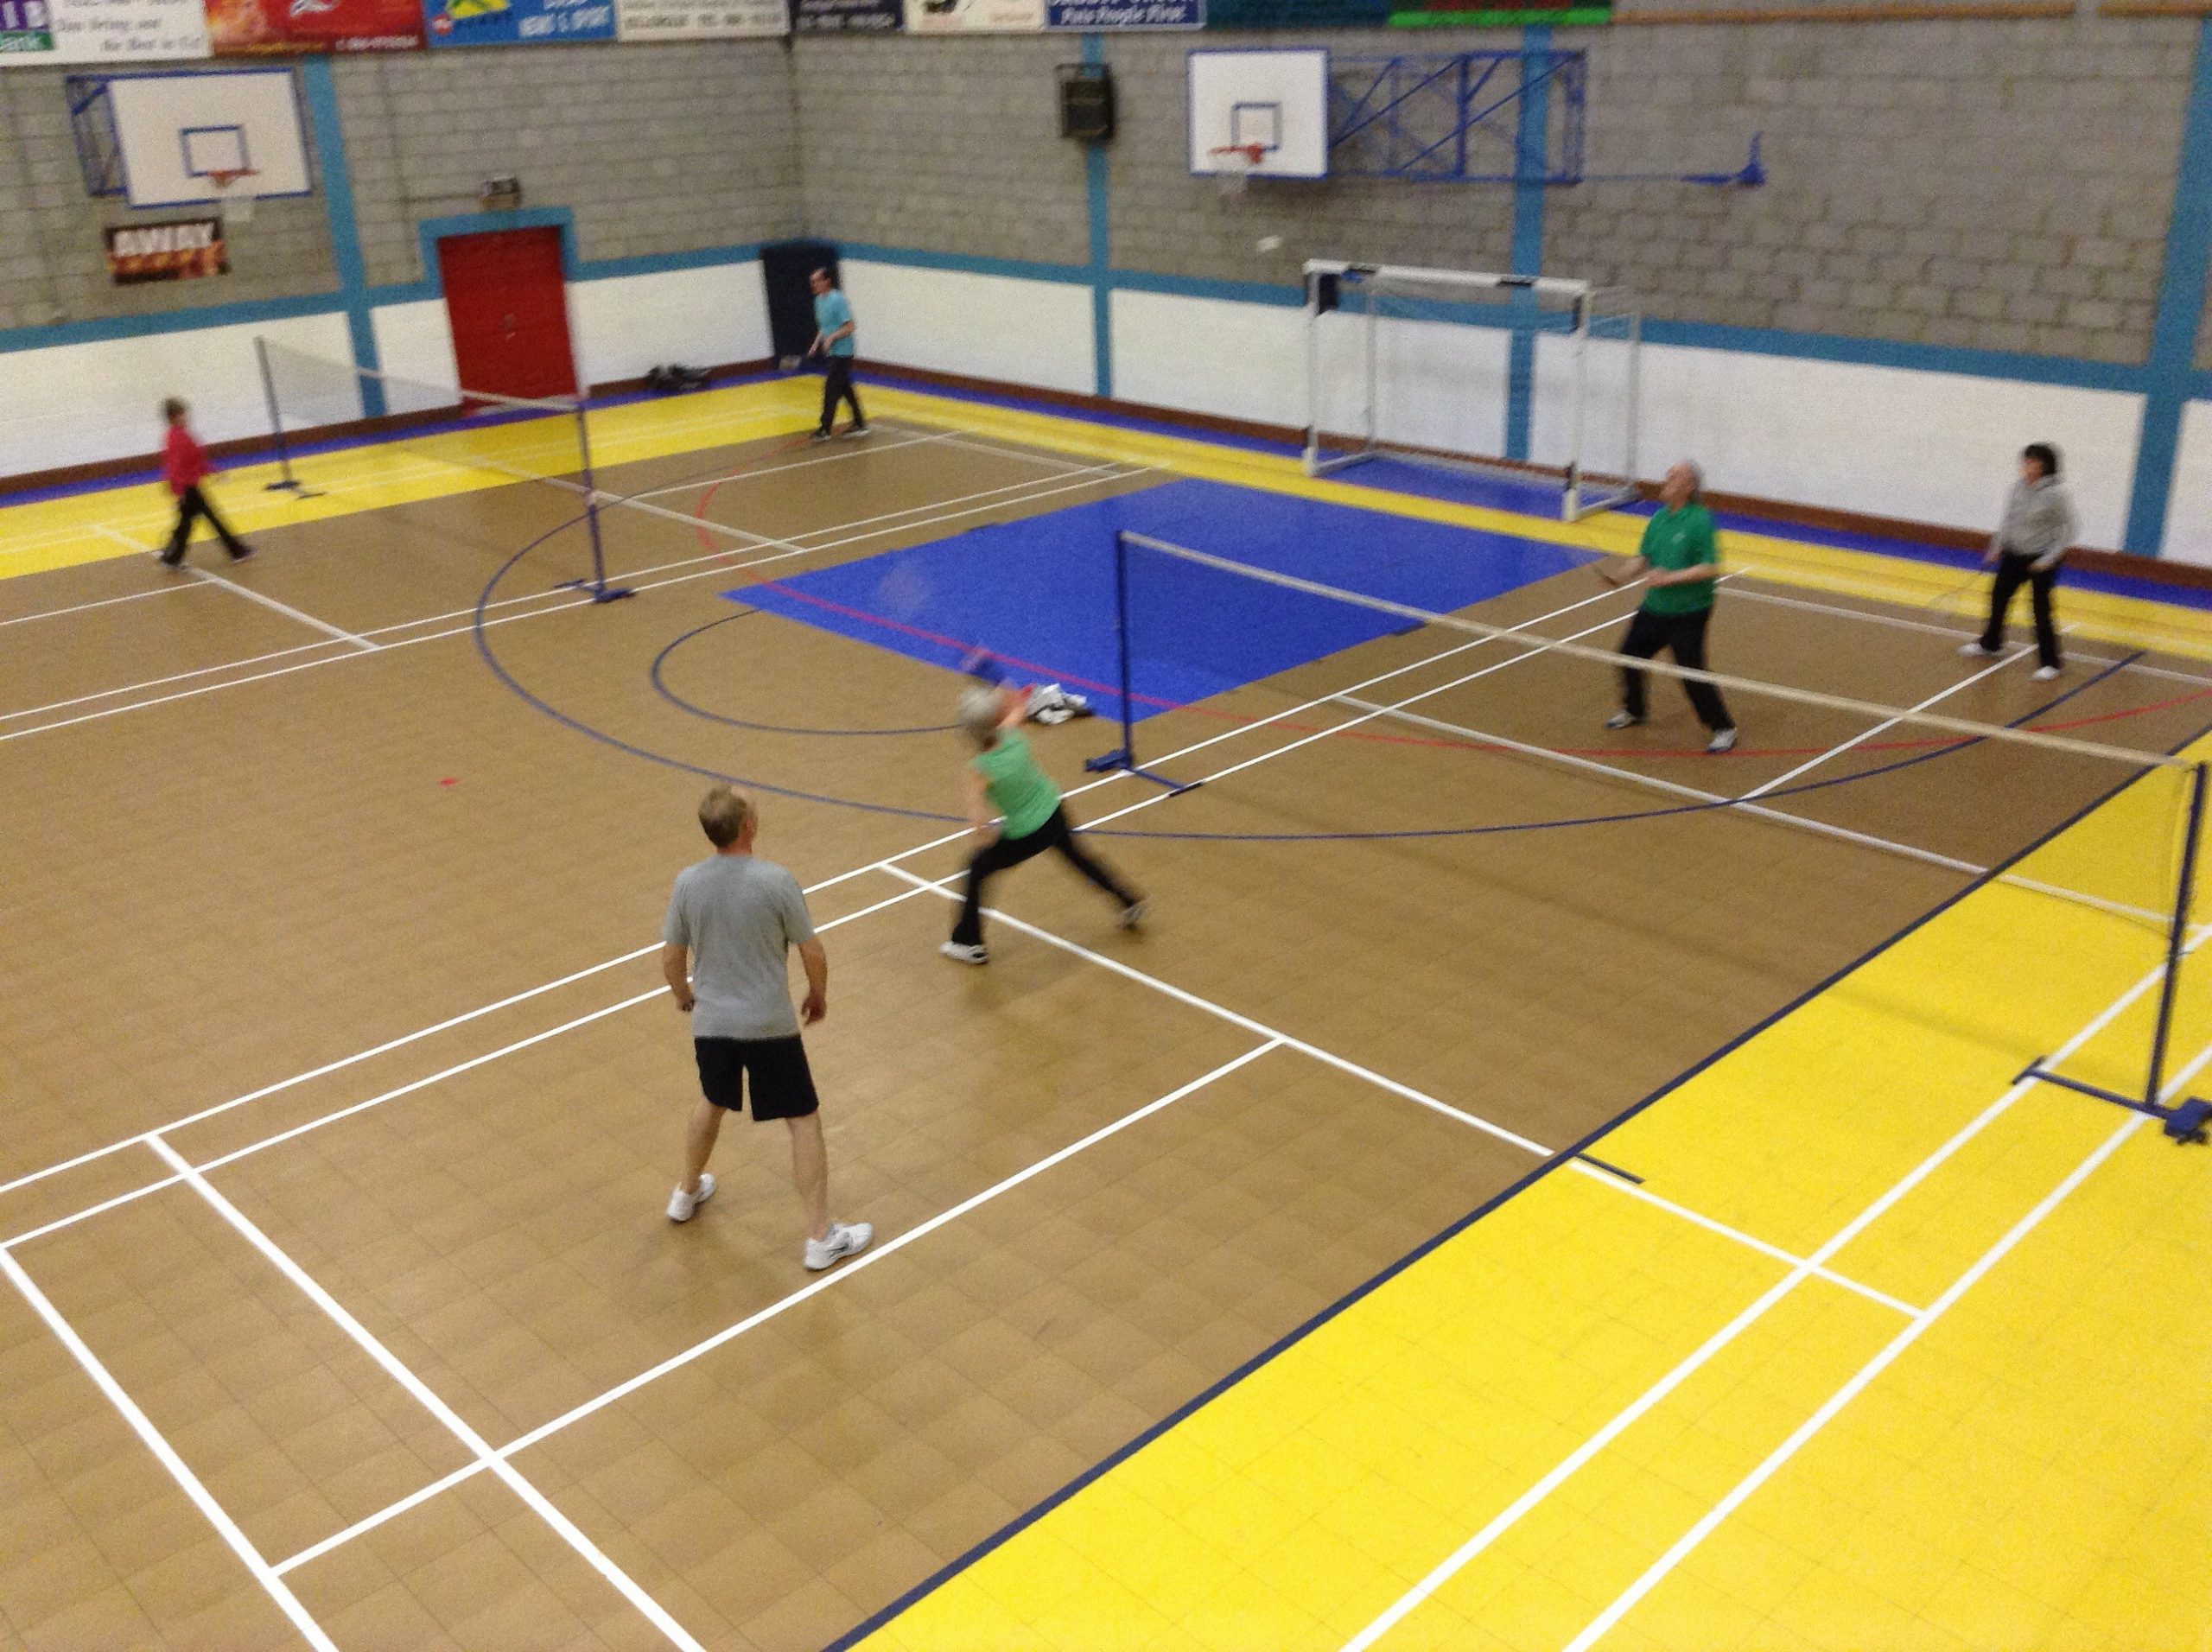 Badminton in Progress